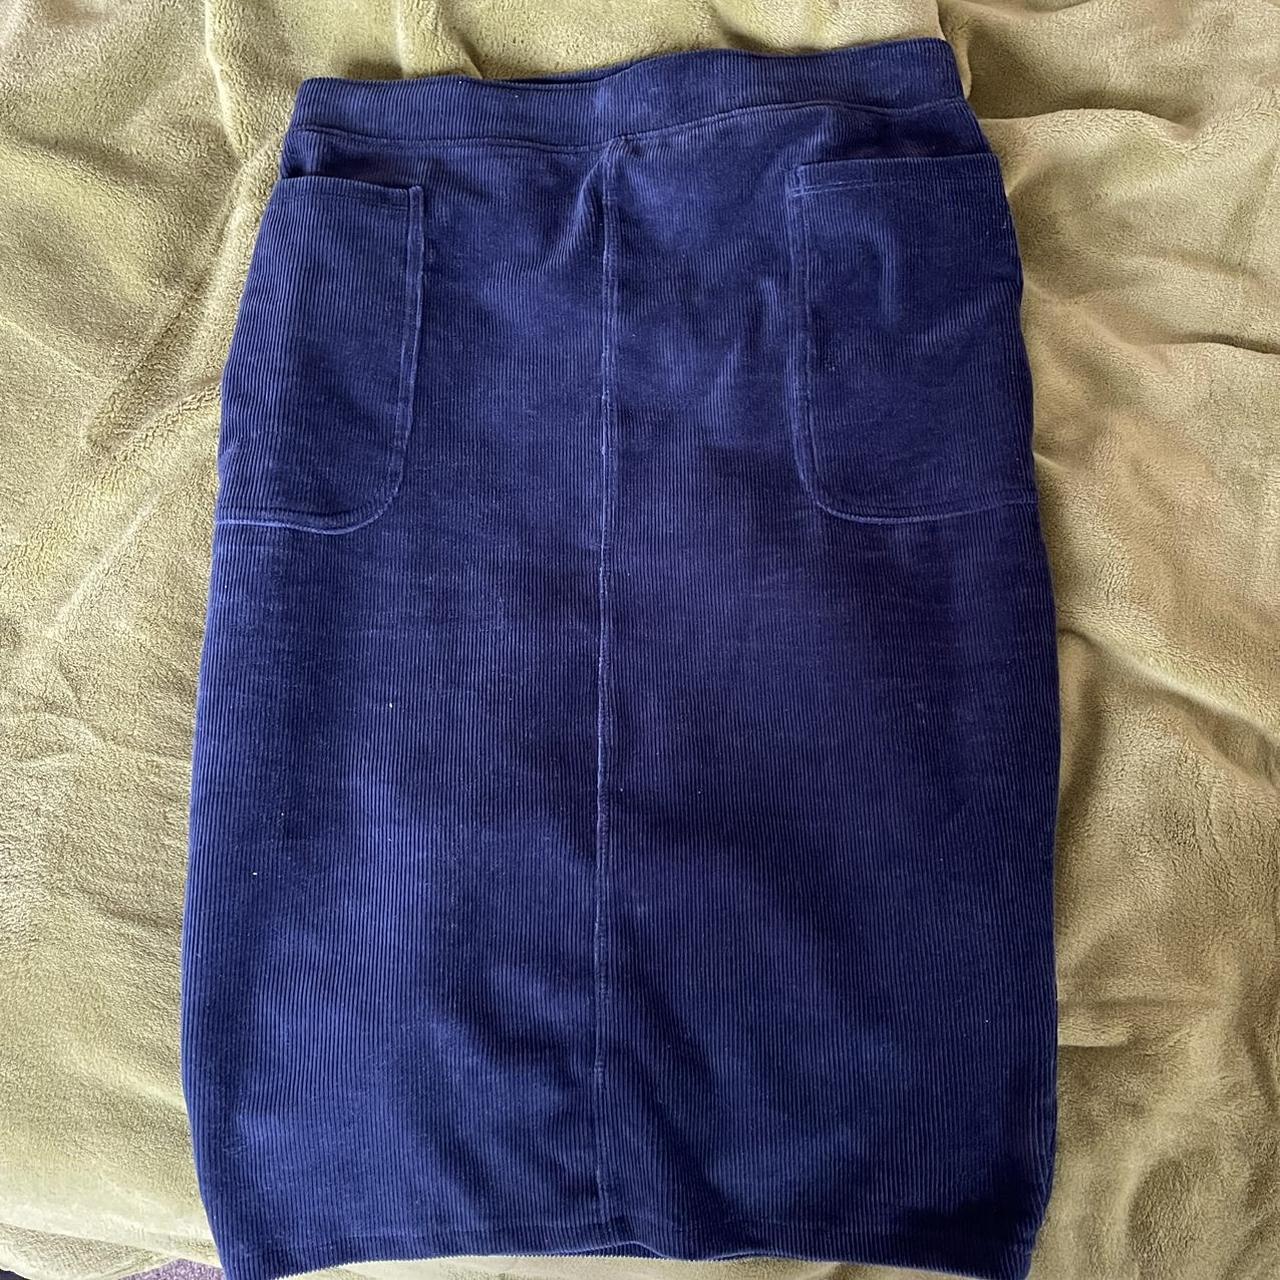 Sainsbury's TU Women's Navy and Blue Skirt | Depop